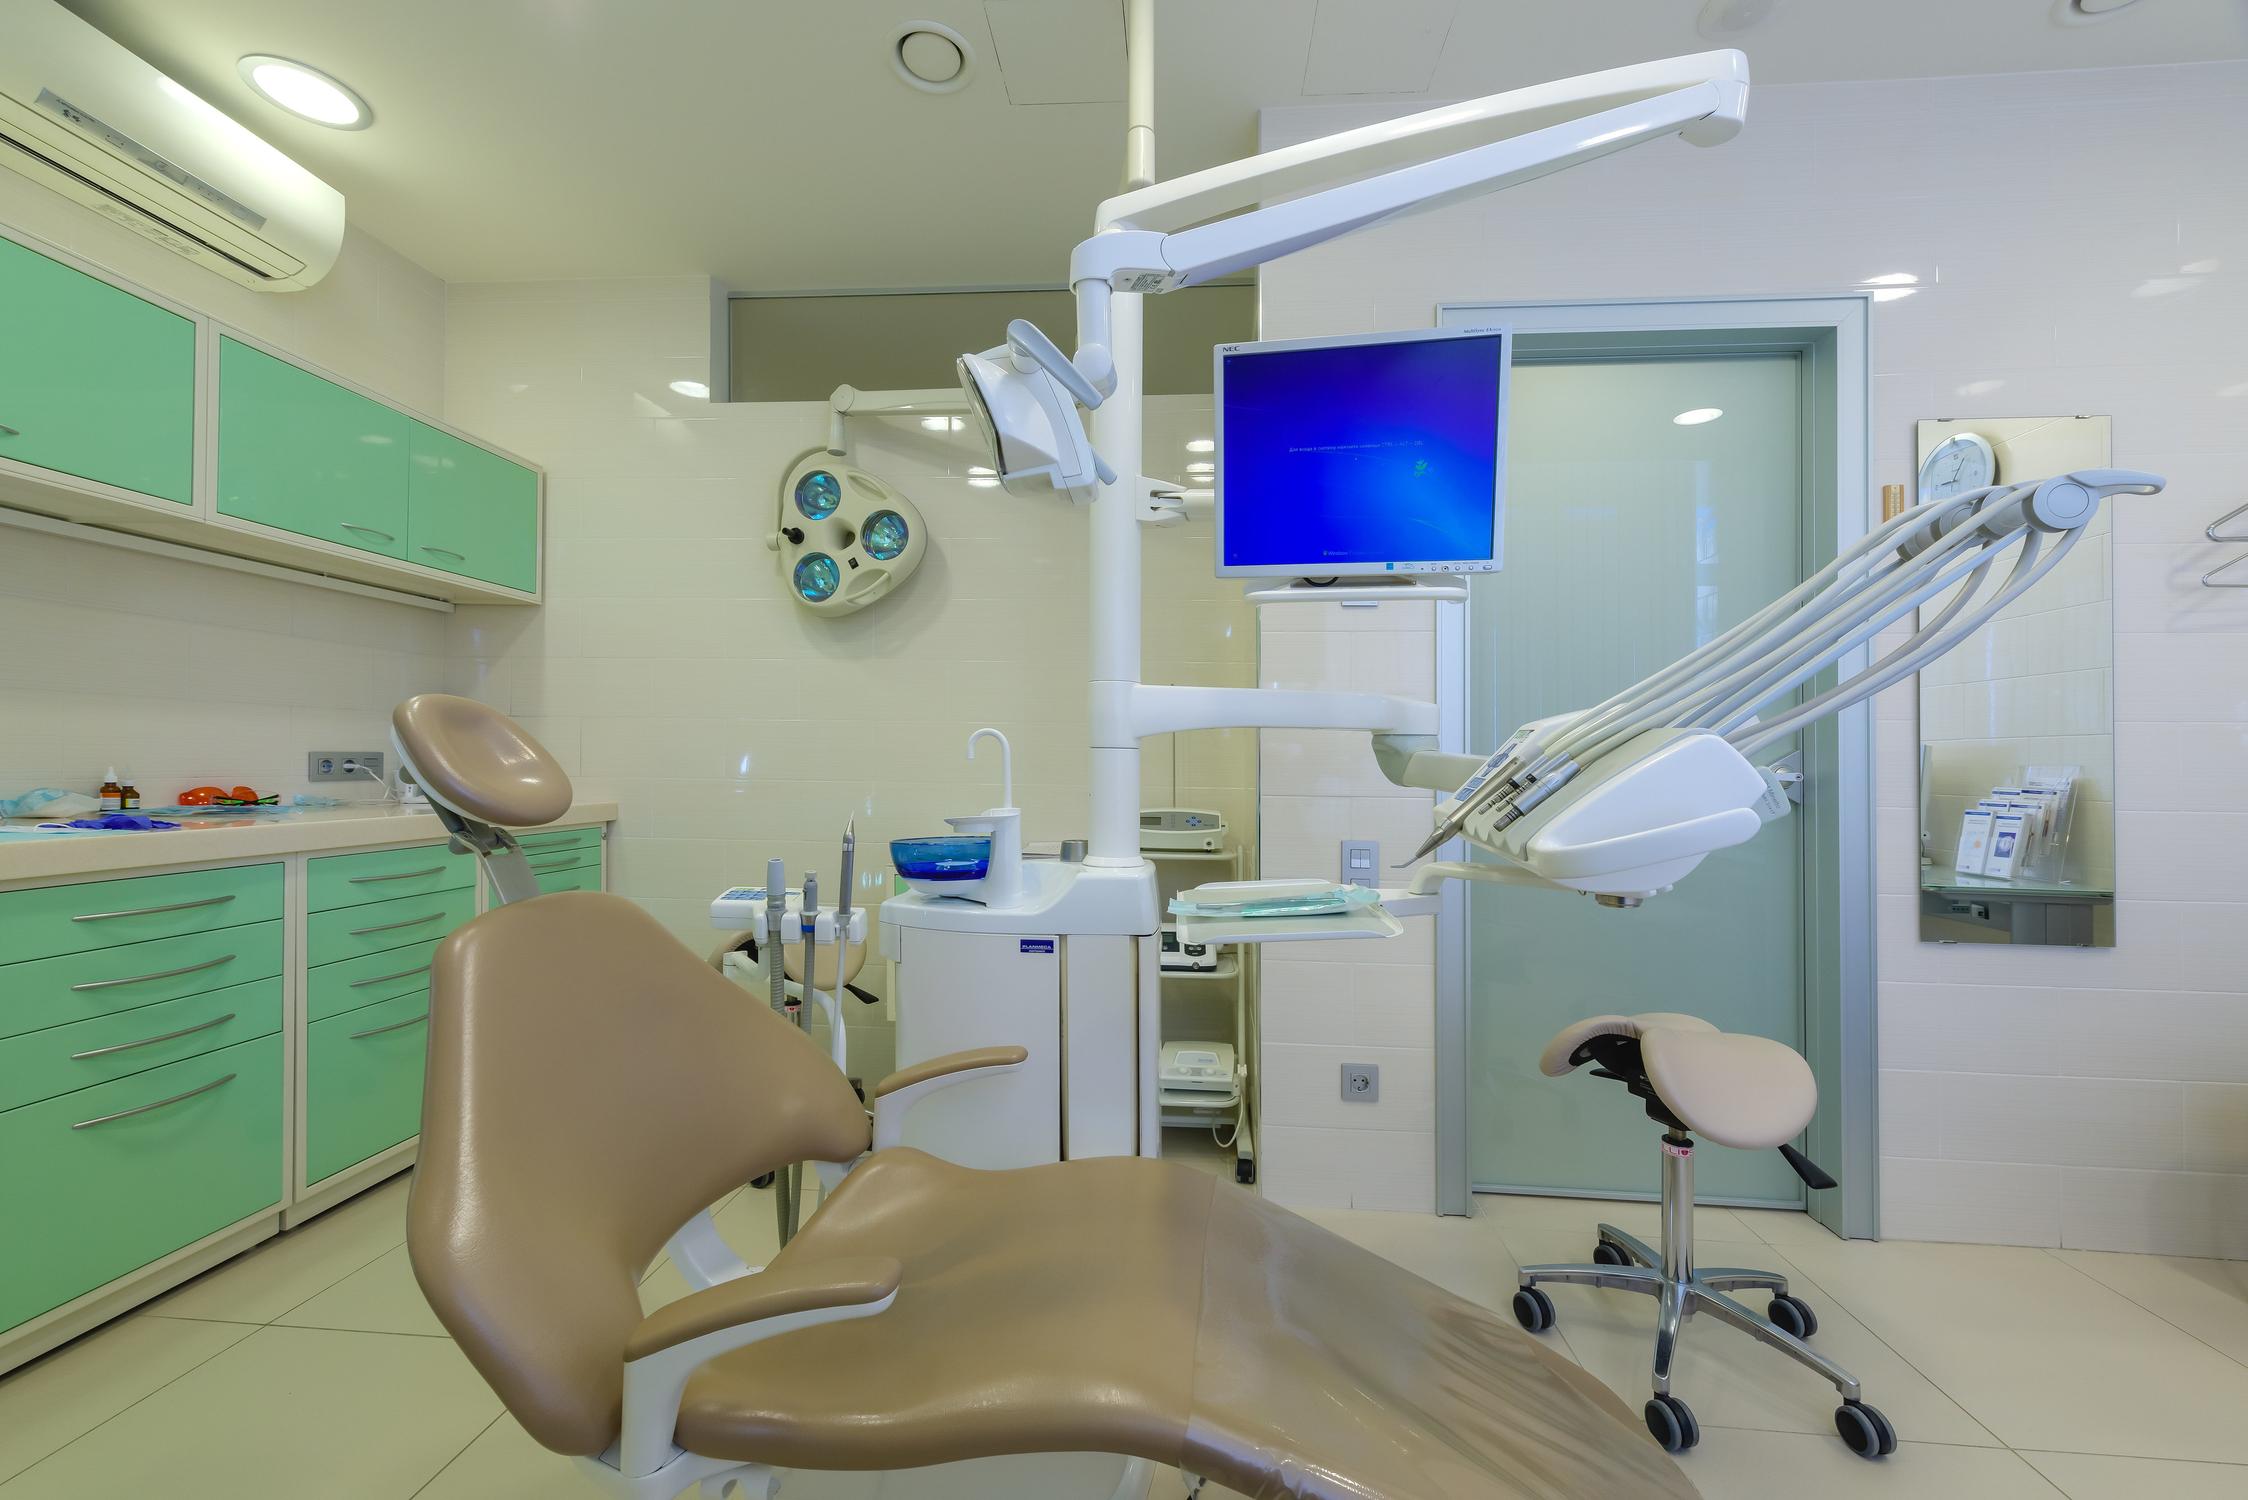 Стоматологическая клиника “Денталайт” в Митино: описание услуг